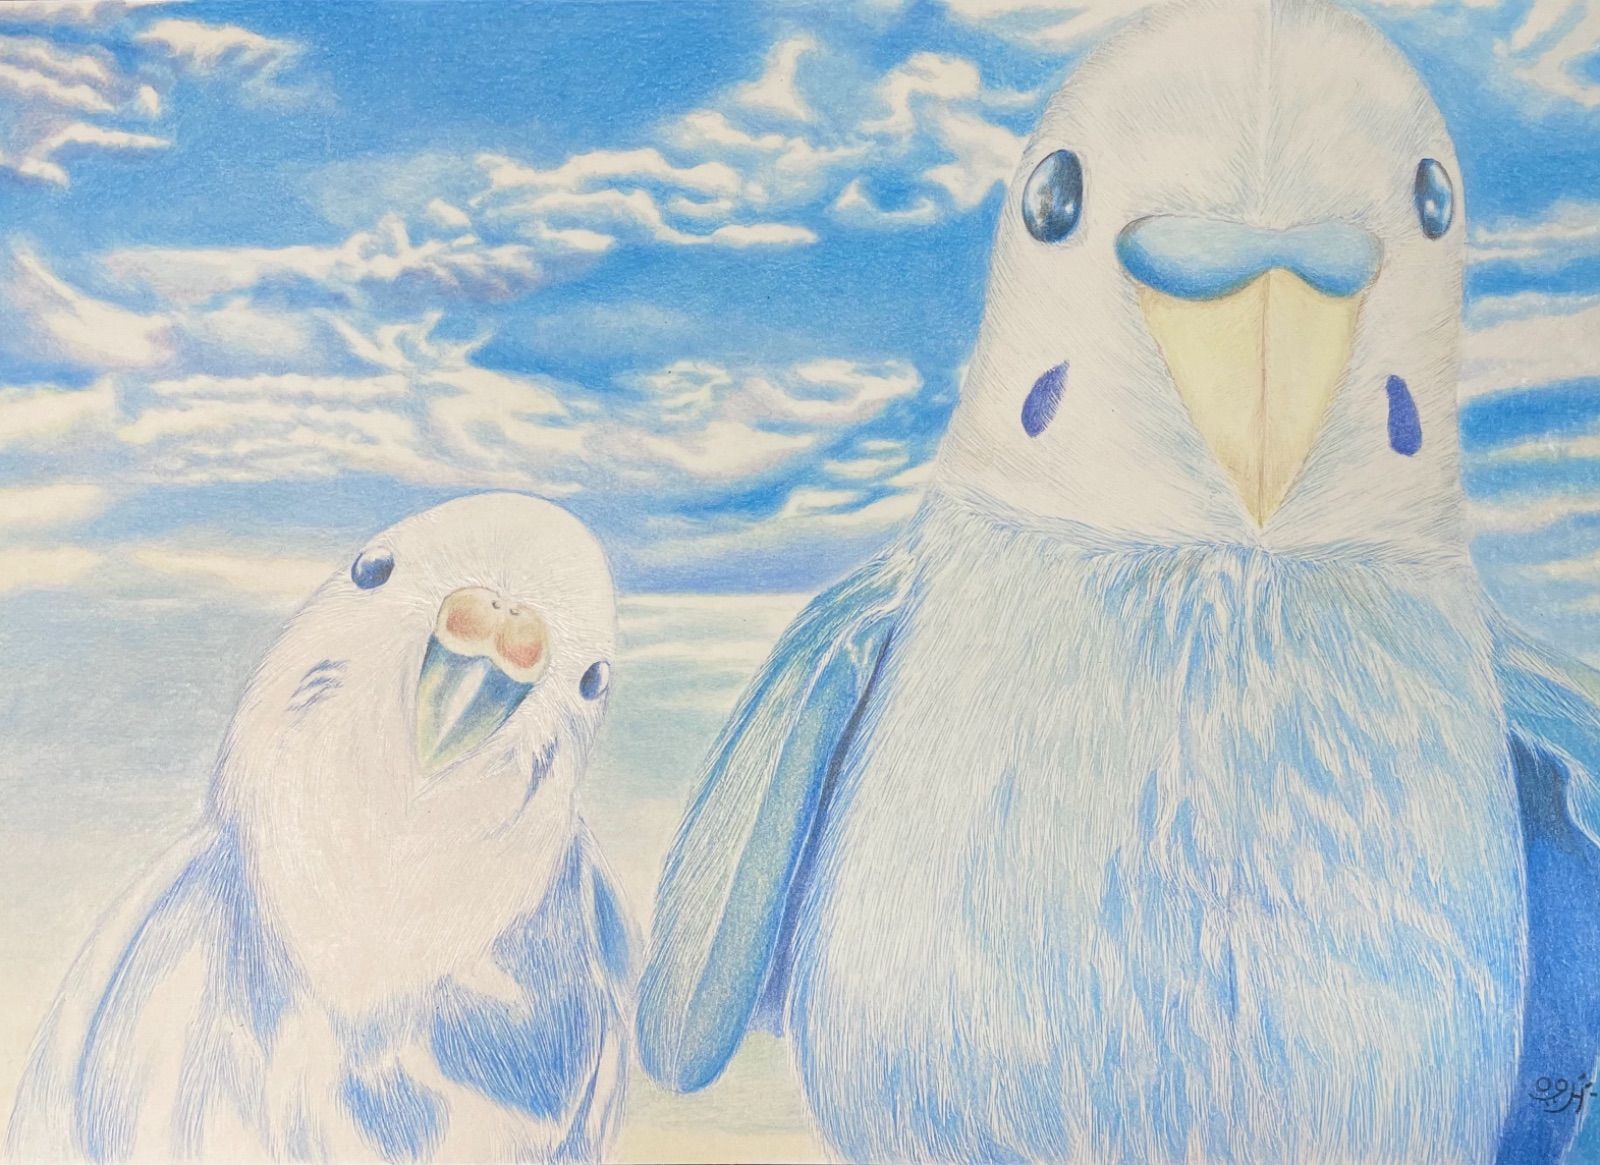 色鉛筆画 イラストレーション ジグソーパズル原画「ウィンズ」 - 絵画